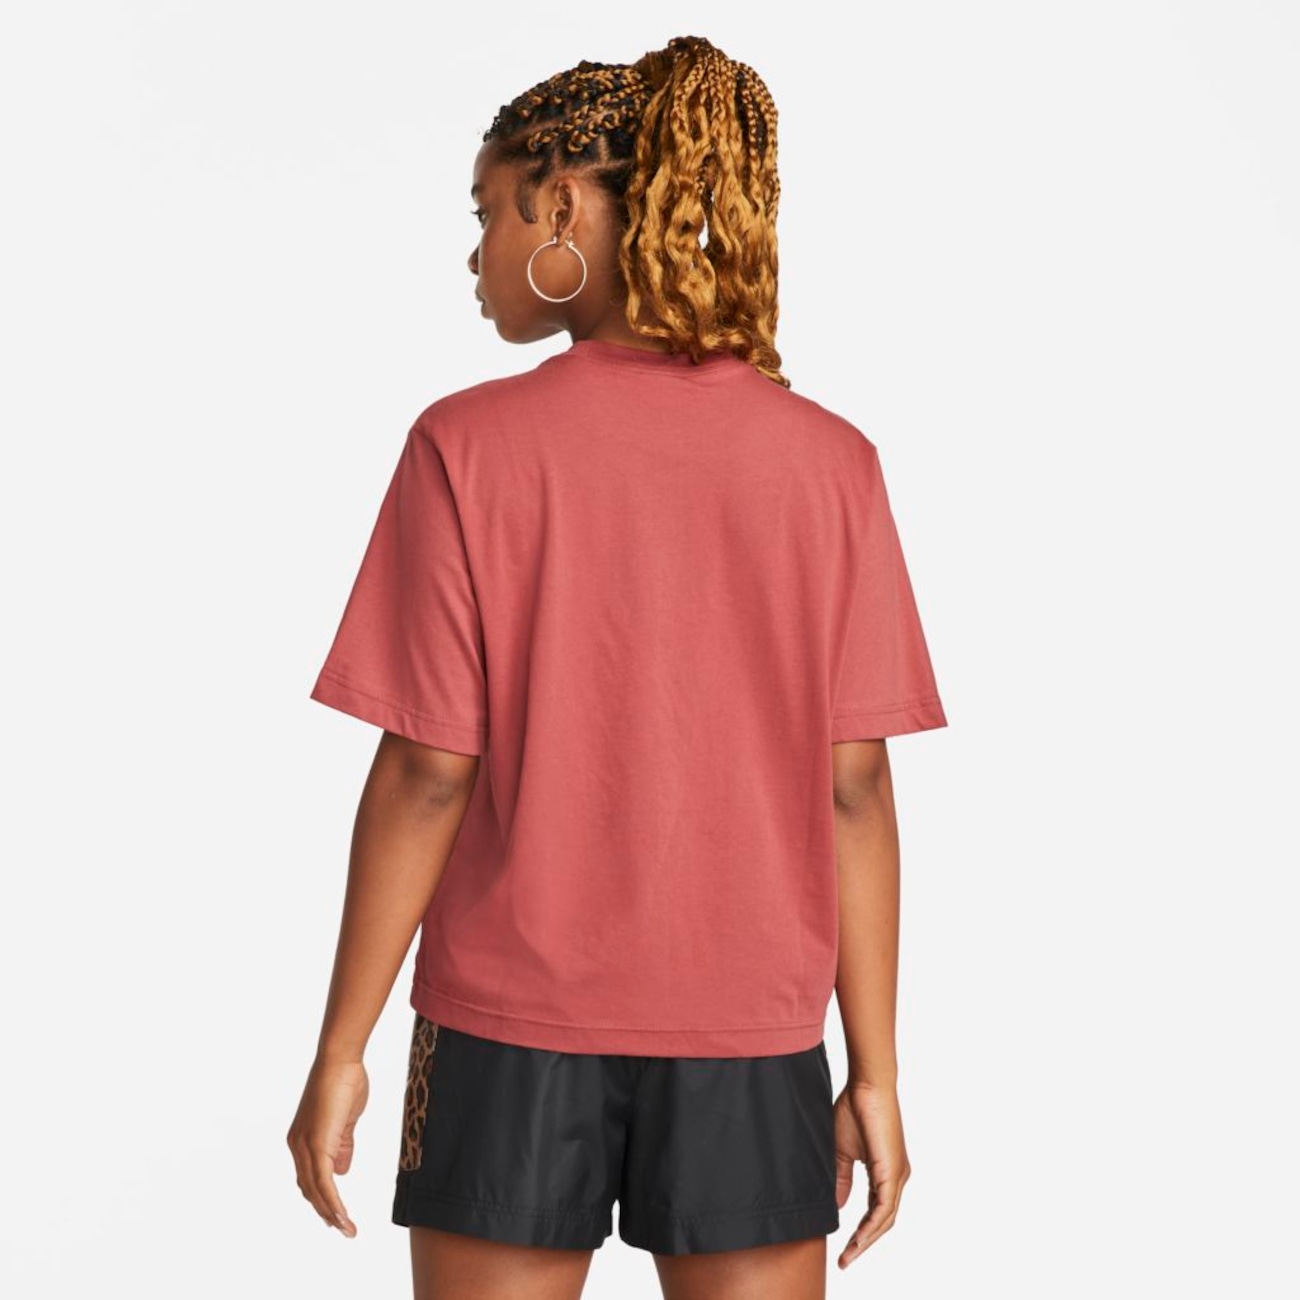 Camiseta Nike Sportswear Feminina - Foto 2